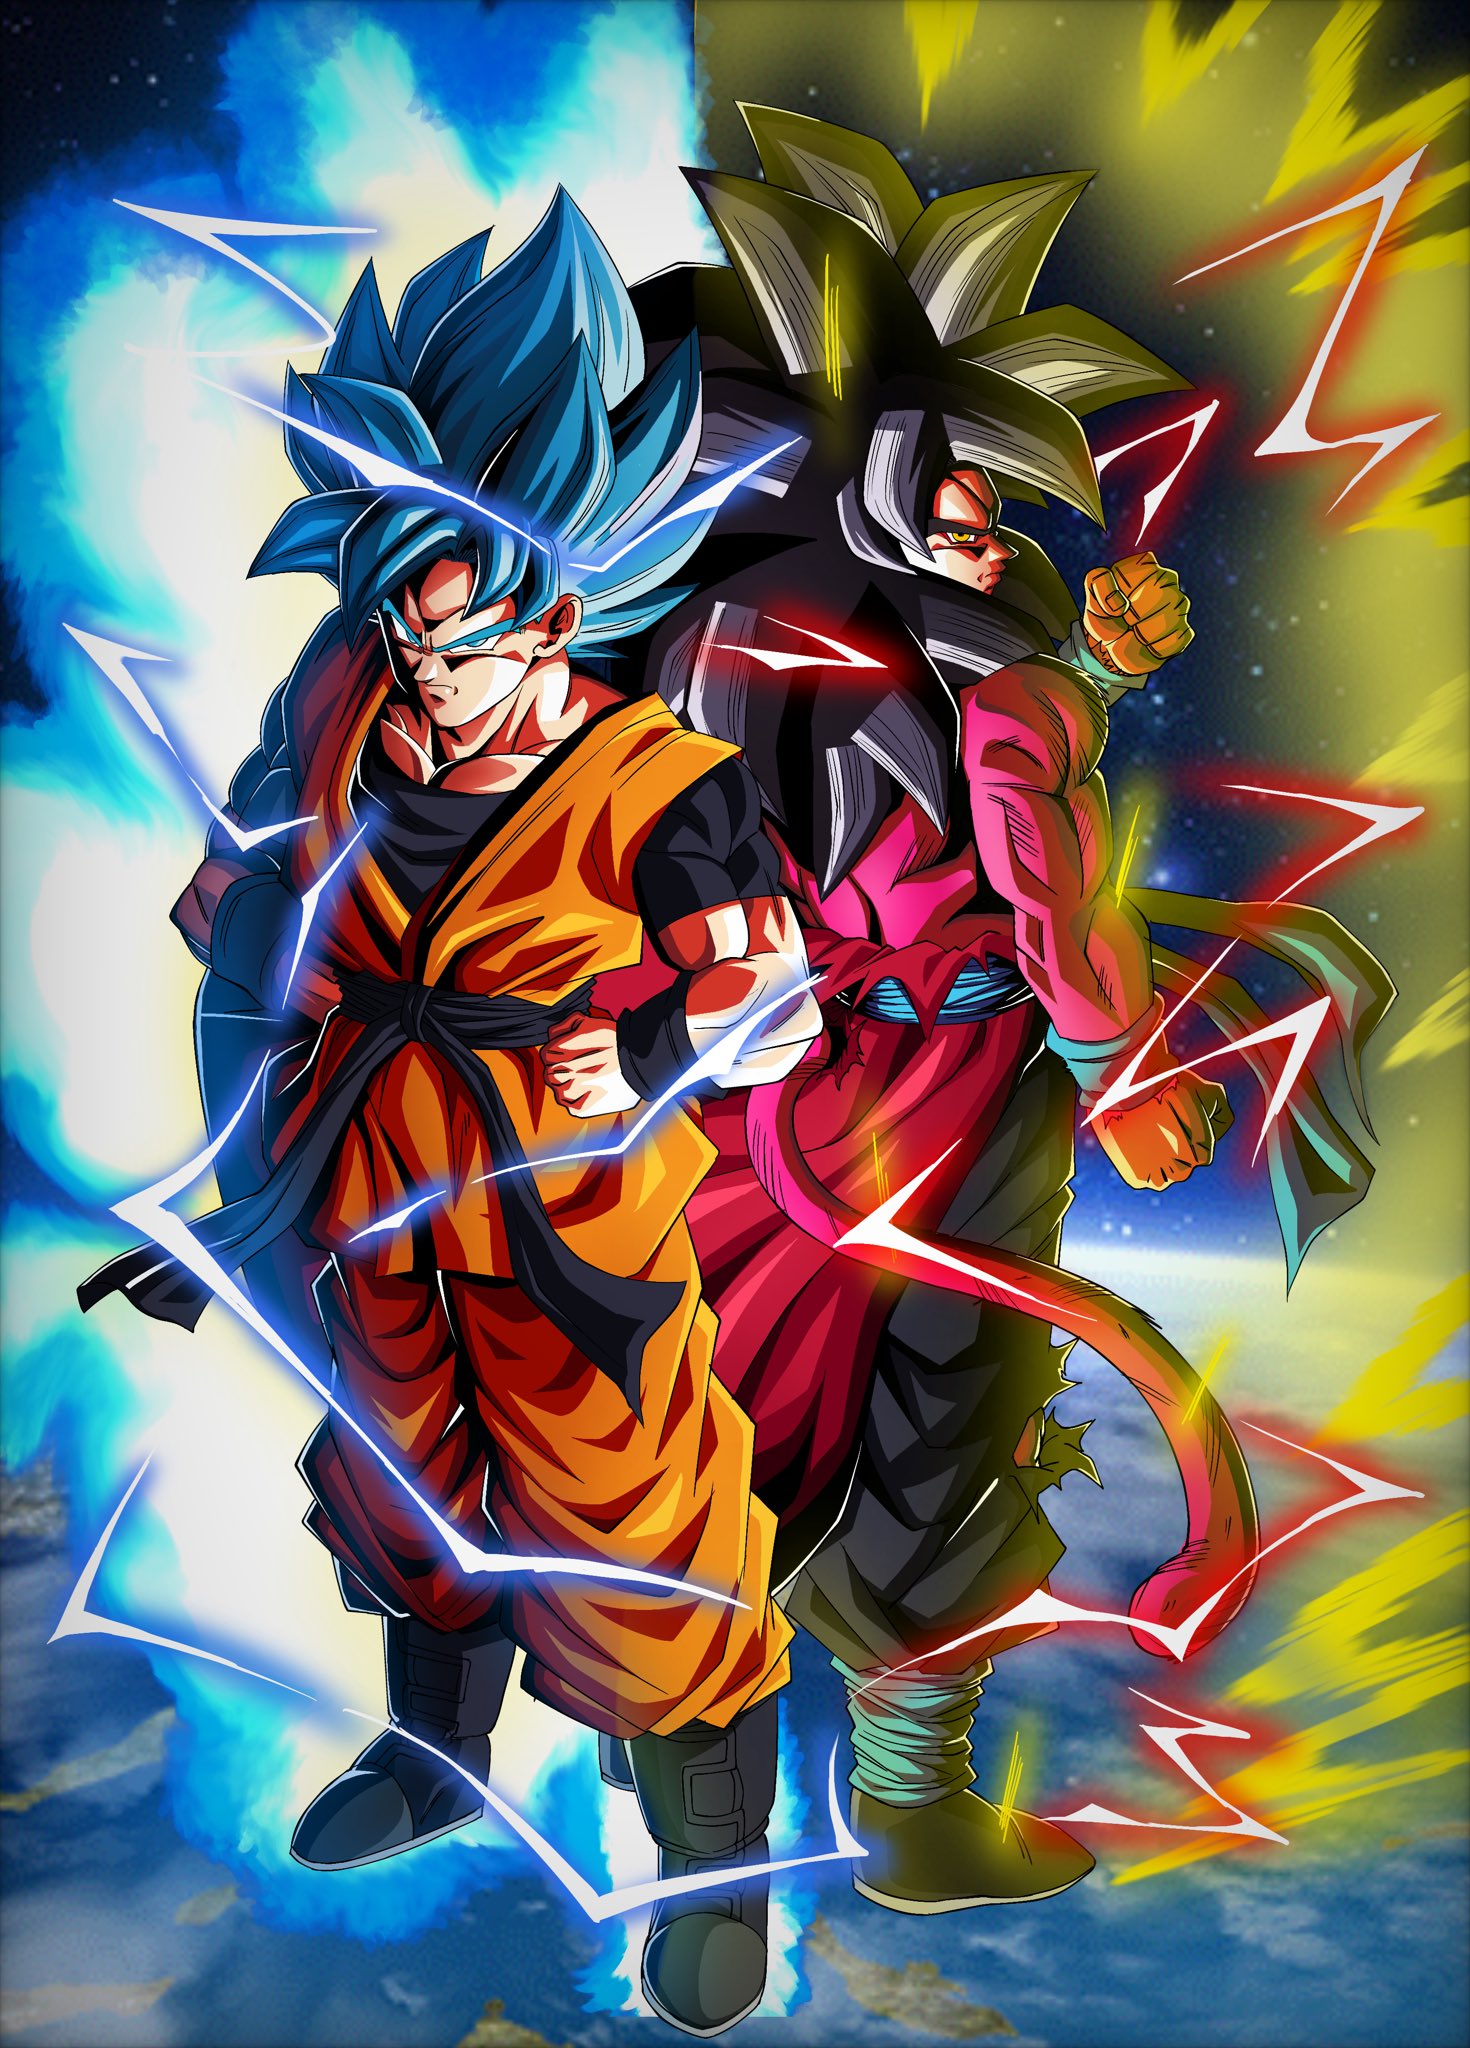 JgokuBlack CC Goku and Xeno Goku #DokkanBattle